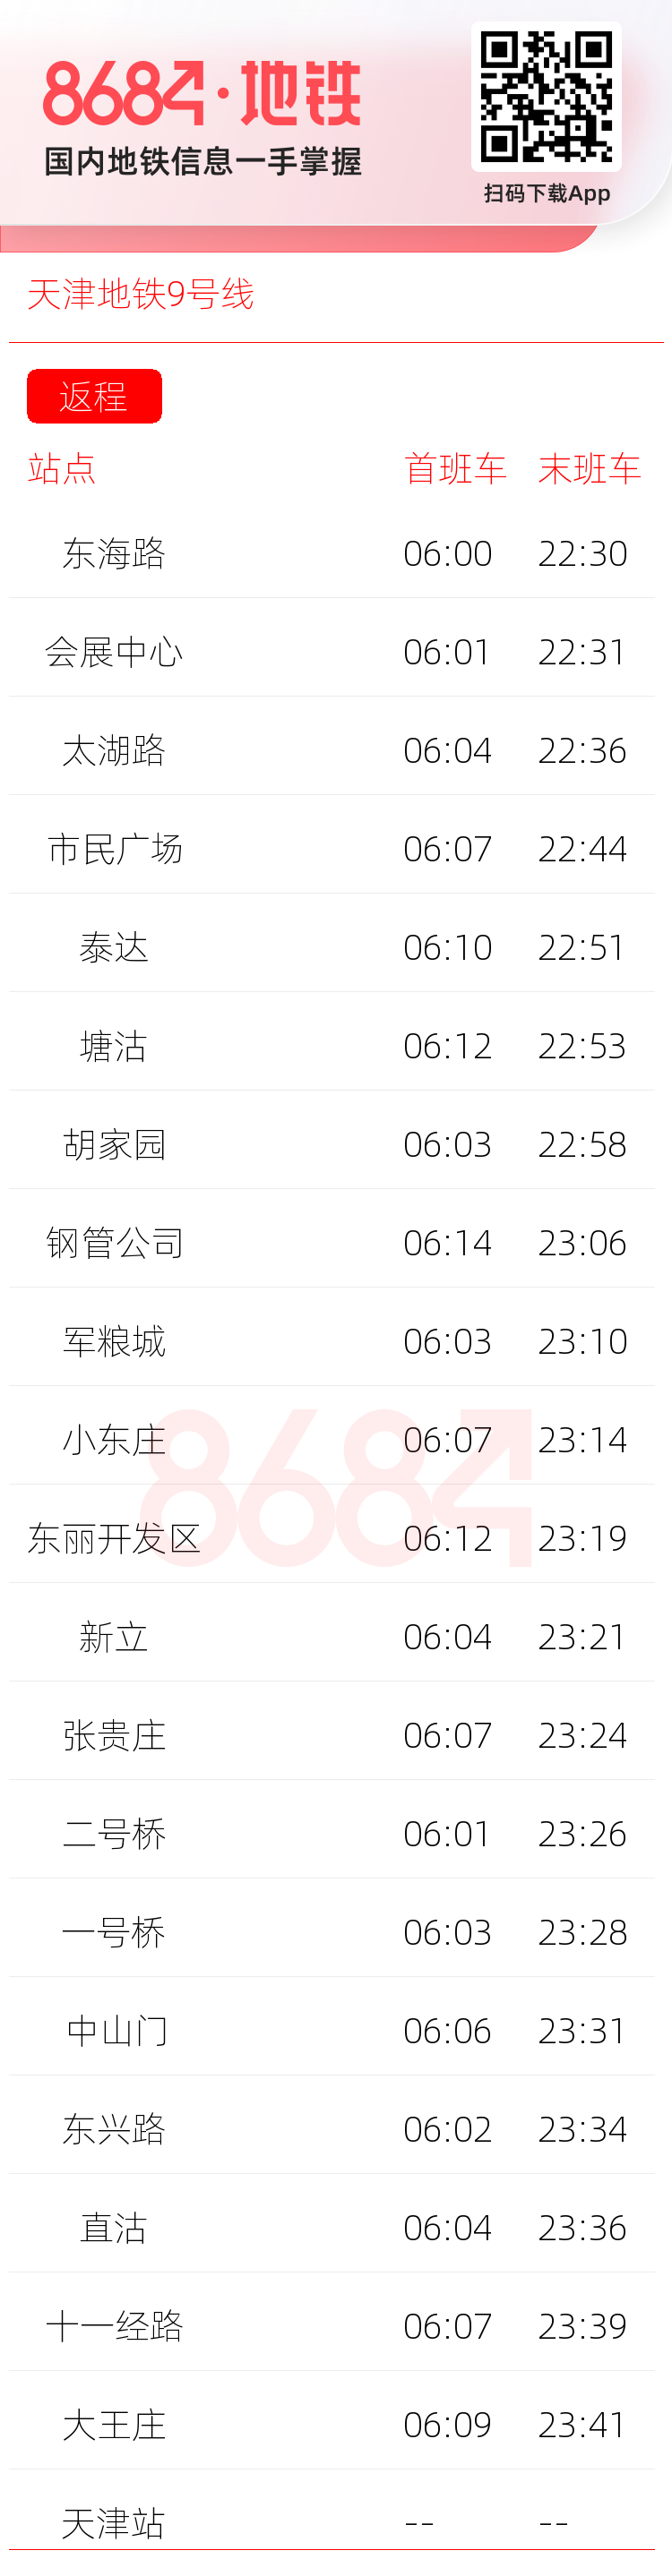 天津地铁9号线运营时间表